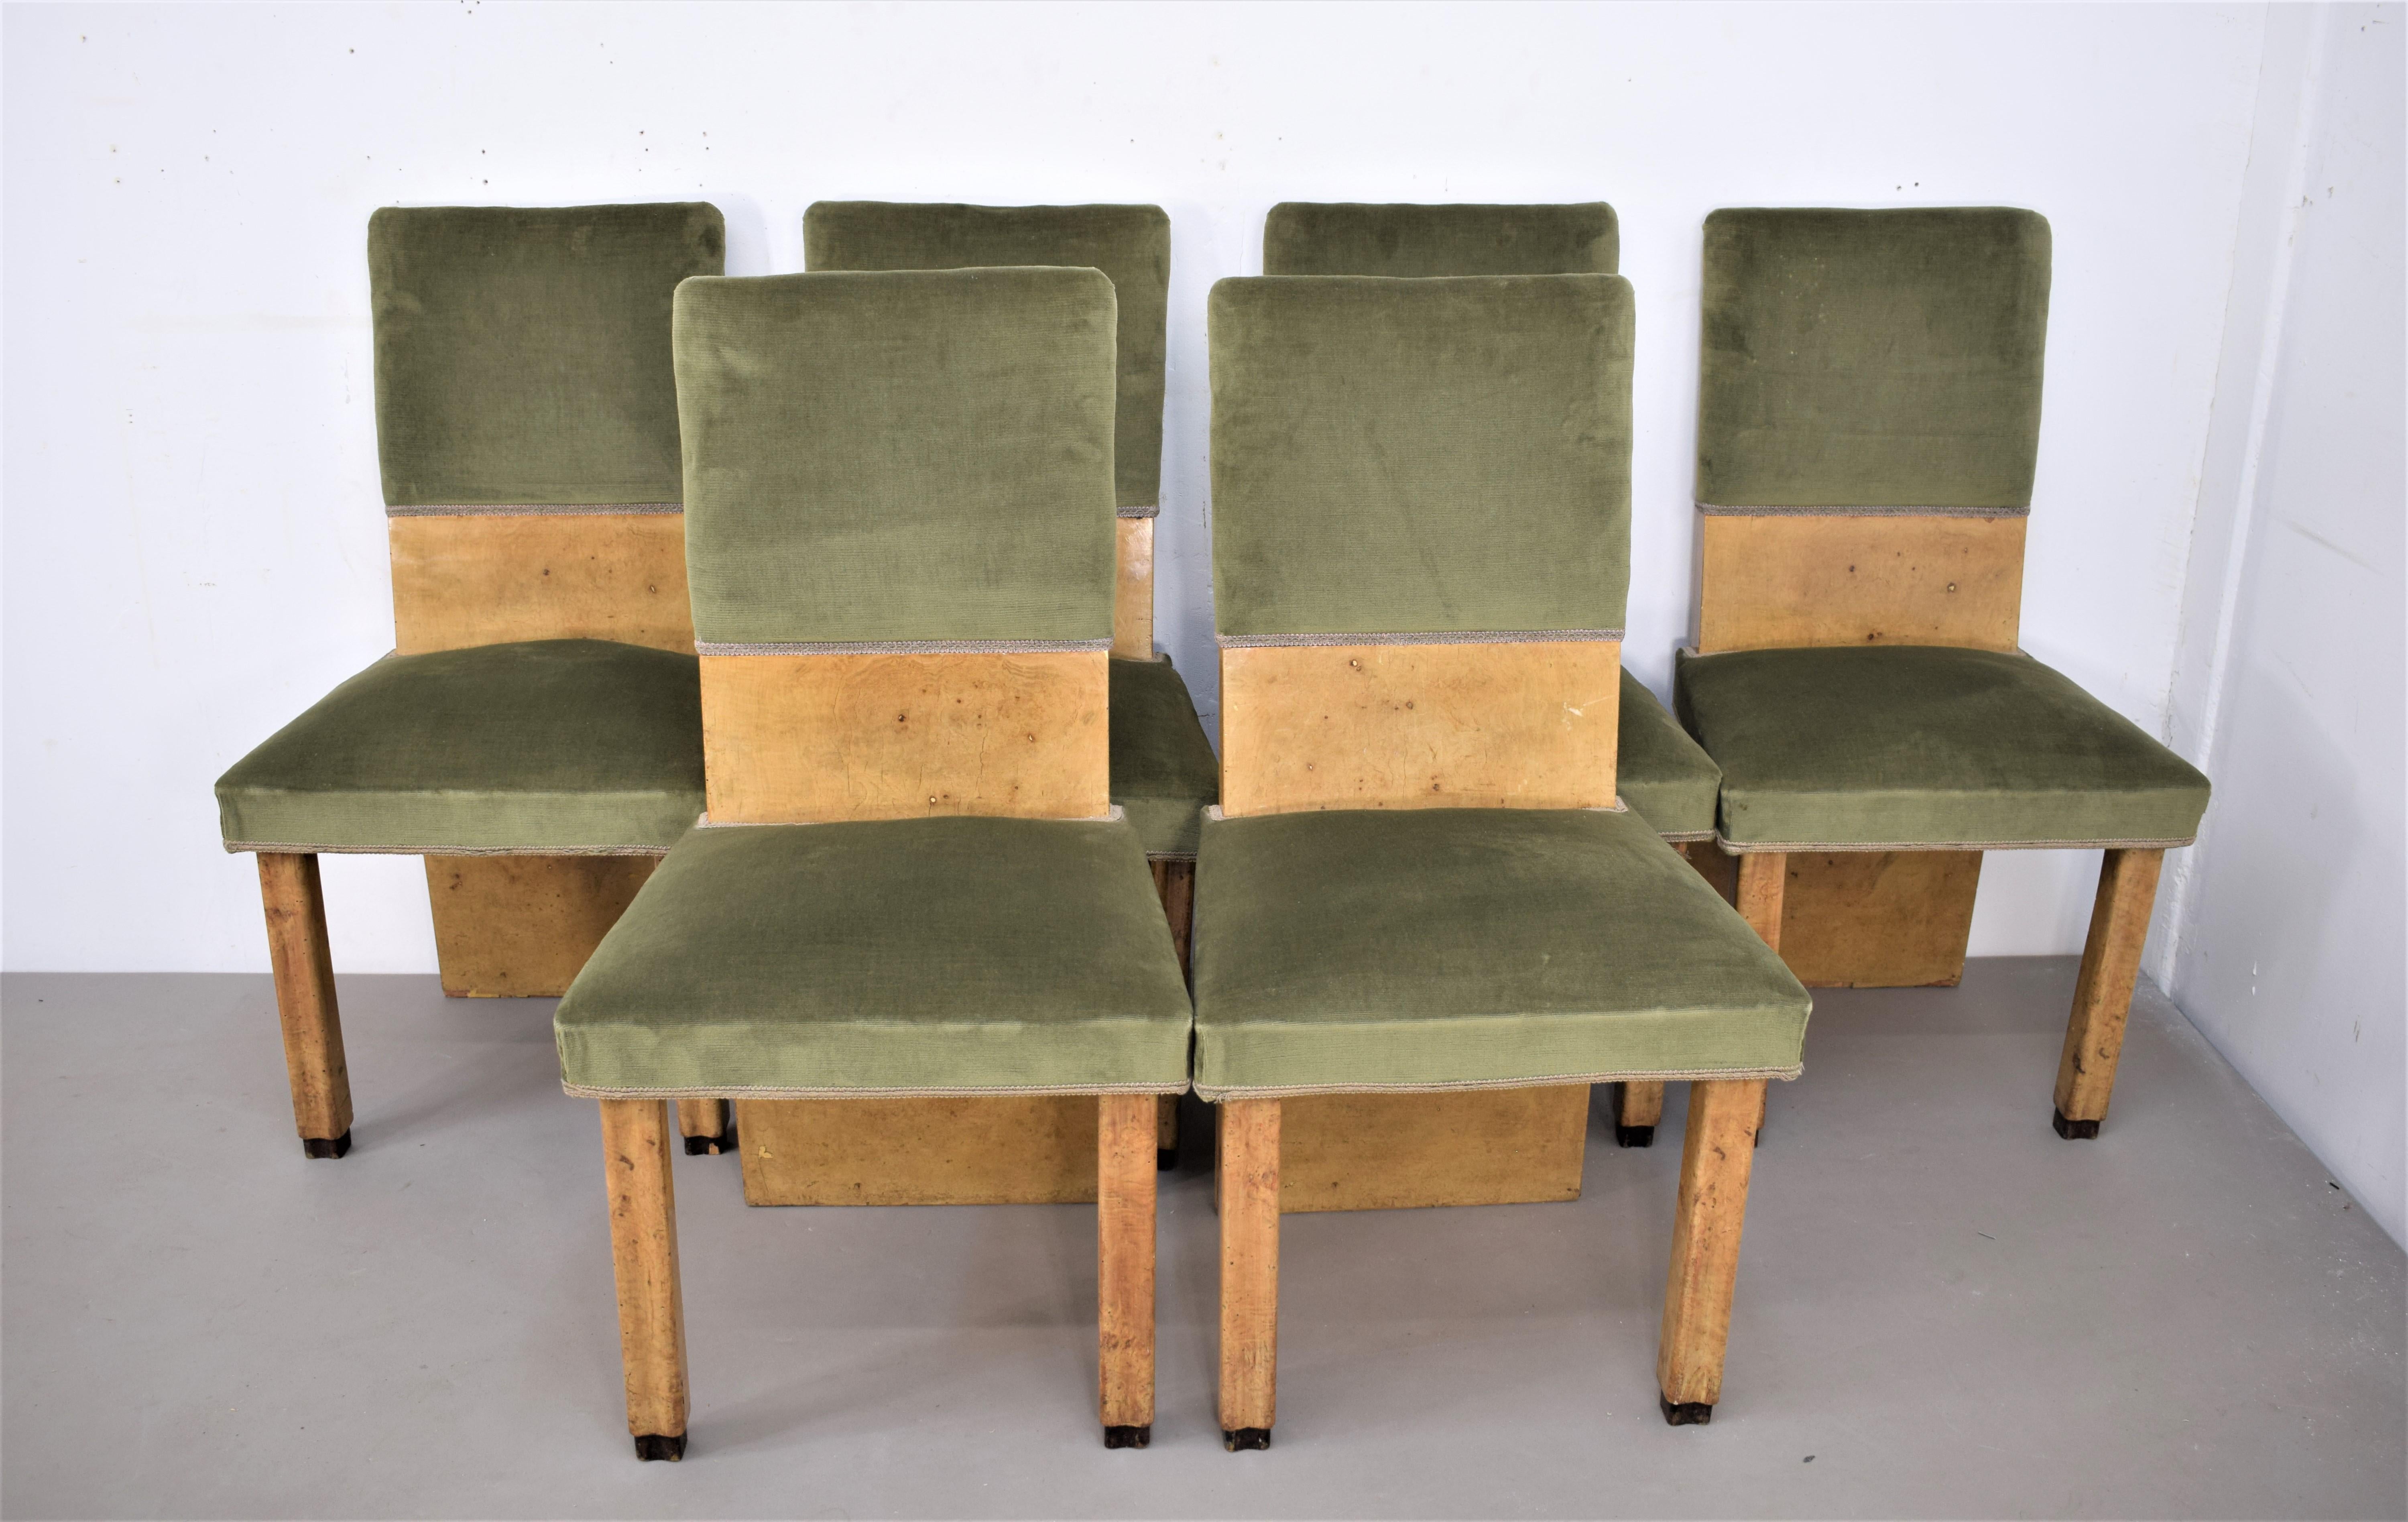 Satz von sechs italienischen Stühlen, 1930er Jahre.
Abmessungen: H=95 cm; B=51 cm; T=46 cm; Sitzhöhe= 45 cm.